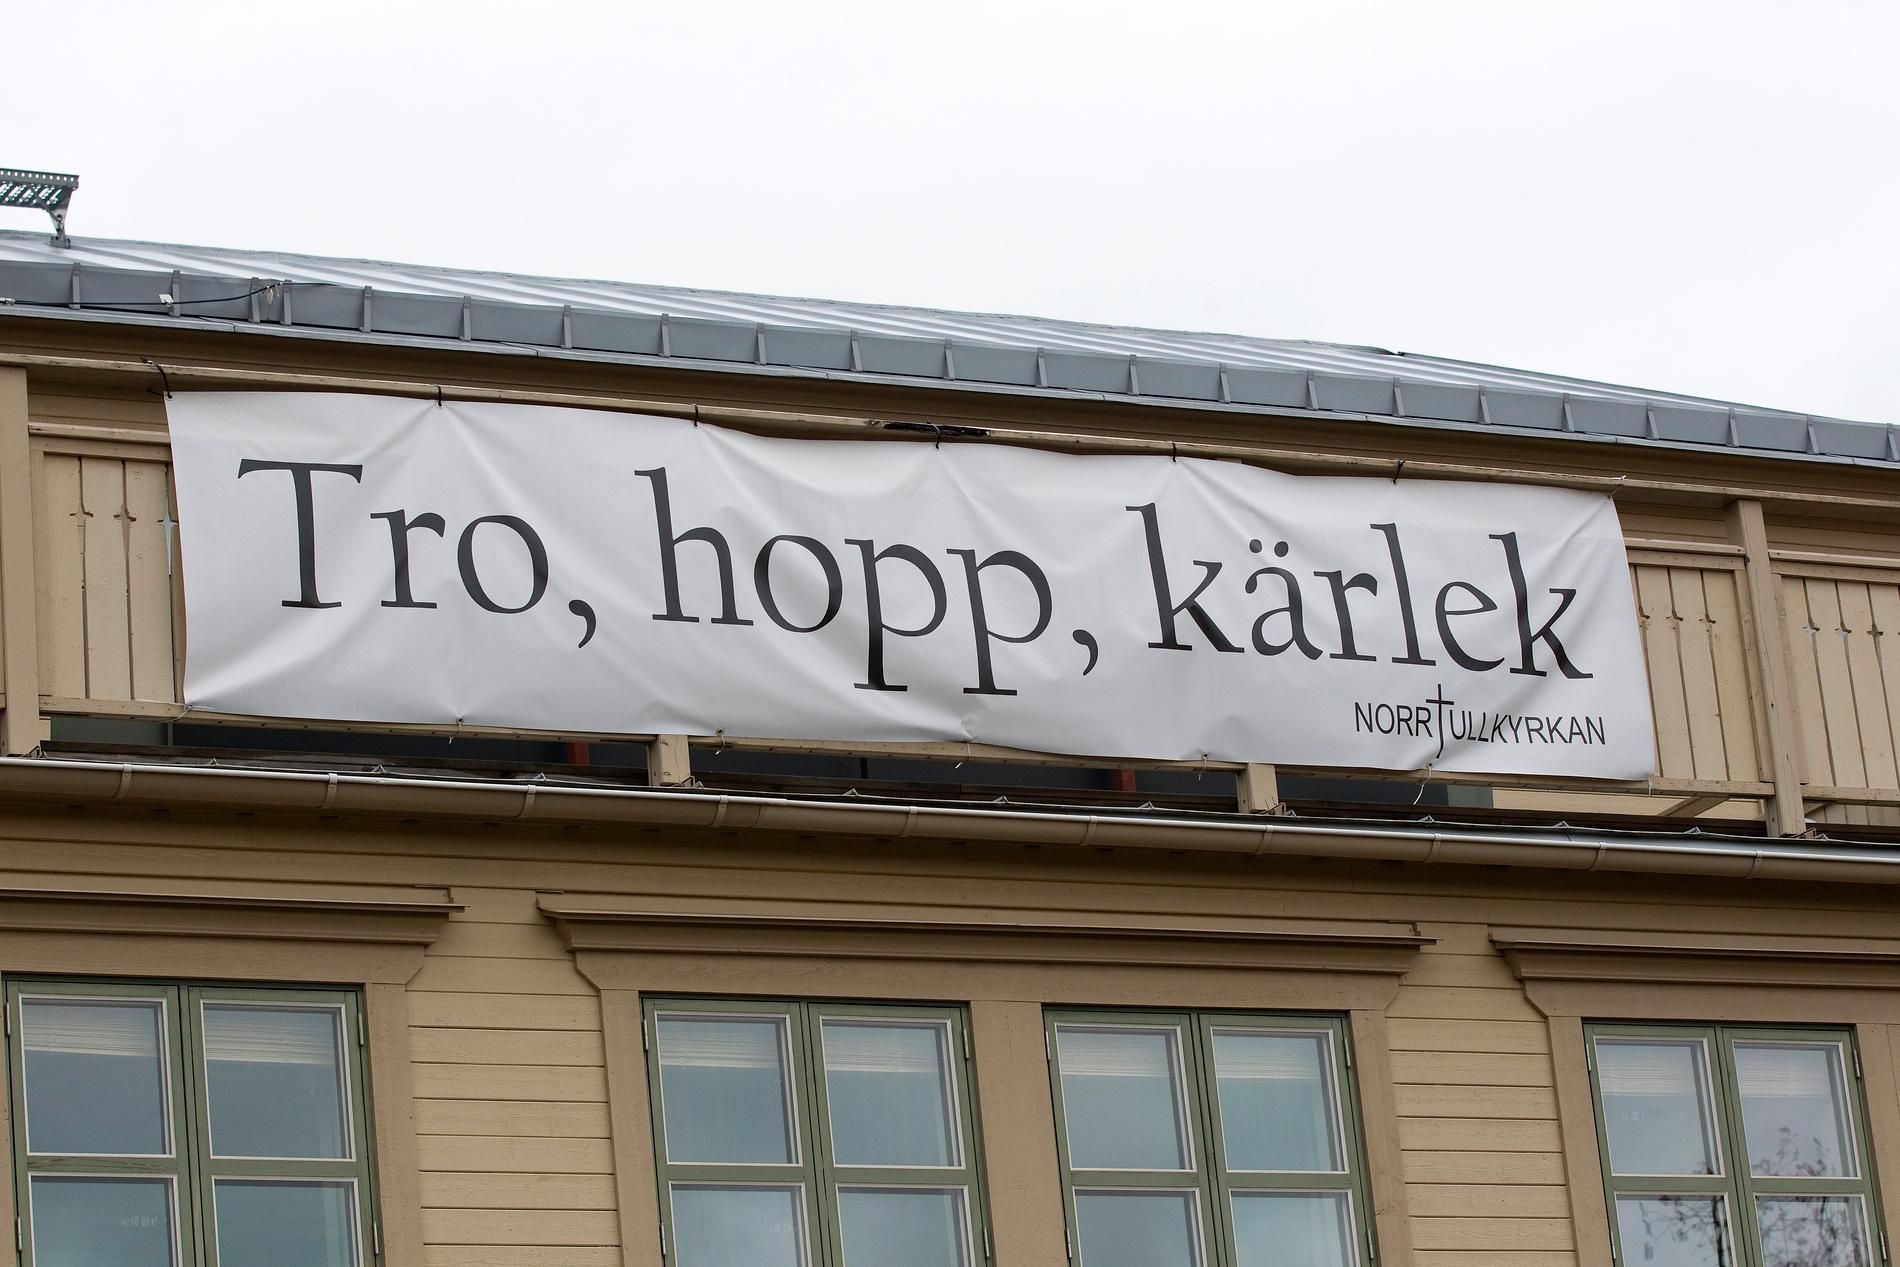 Vid Norrtullskyrkan har en banderoll hängts upp.